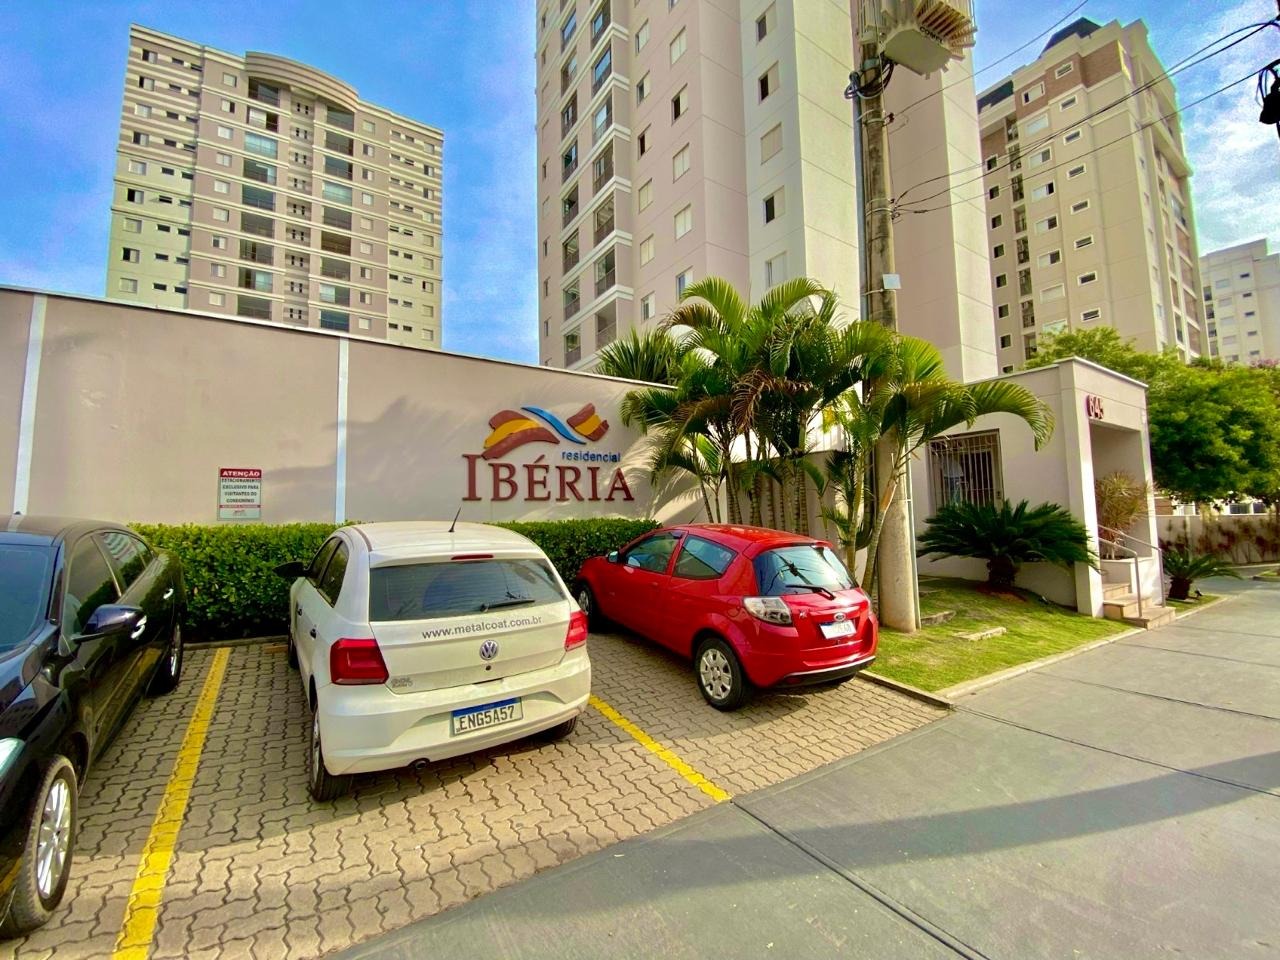 Apartamento Elegante de 3 Suítes no Condomínio Ibéria: Conforto e Exclusividade em 120m²